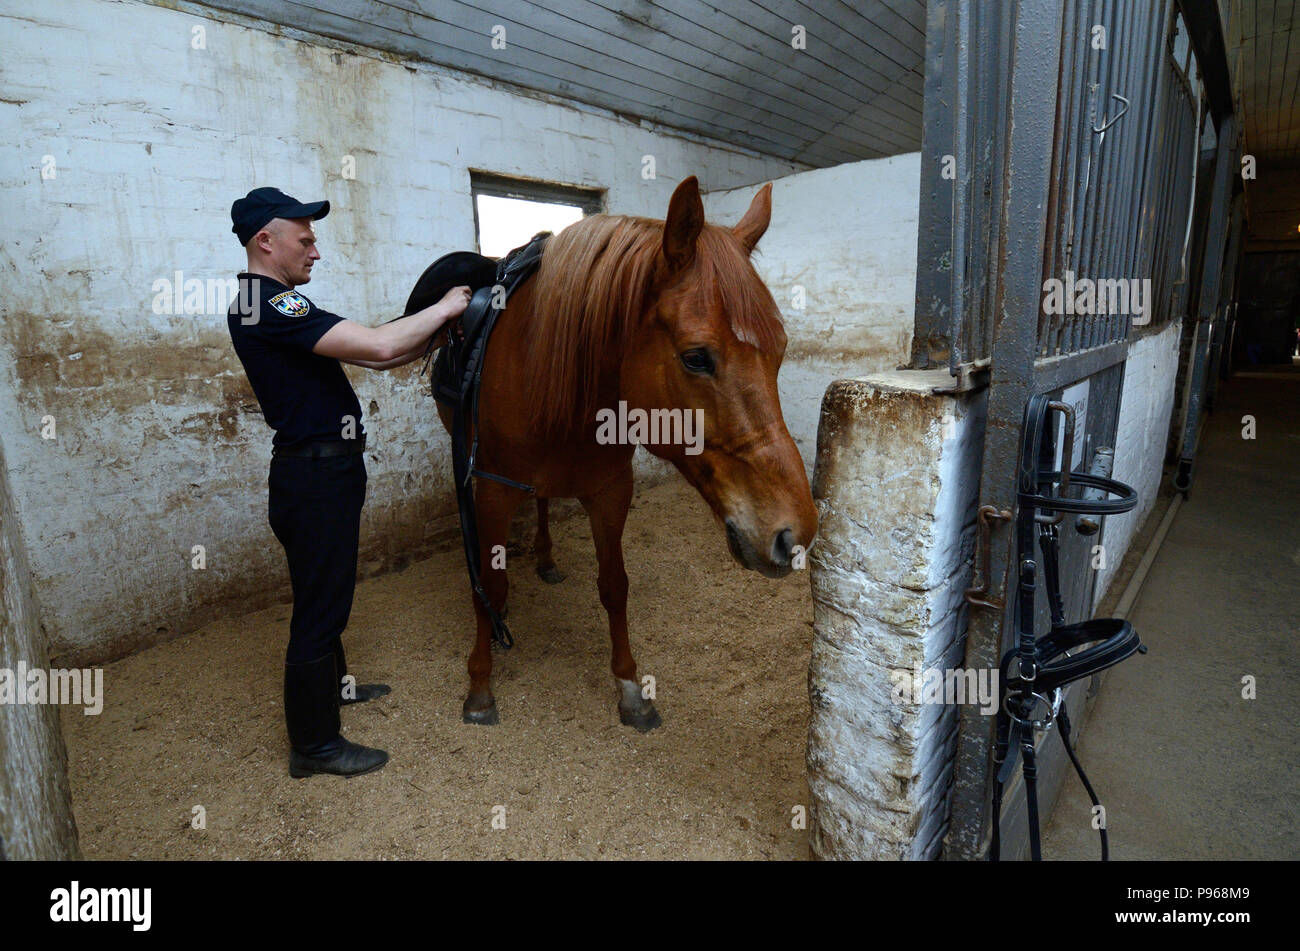 Am stabil. Polizist bereitet ein Pferd für Gehen an einem paddock Inverkehrbringen Sattlerei auf dem Rücken. Juni 12, 2018. Kiew, Ukraine Stockfoto